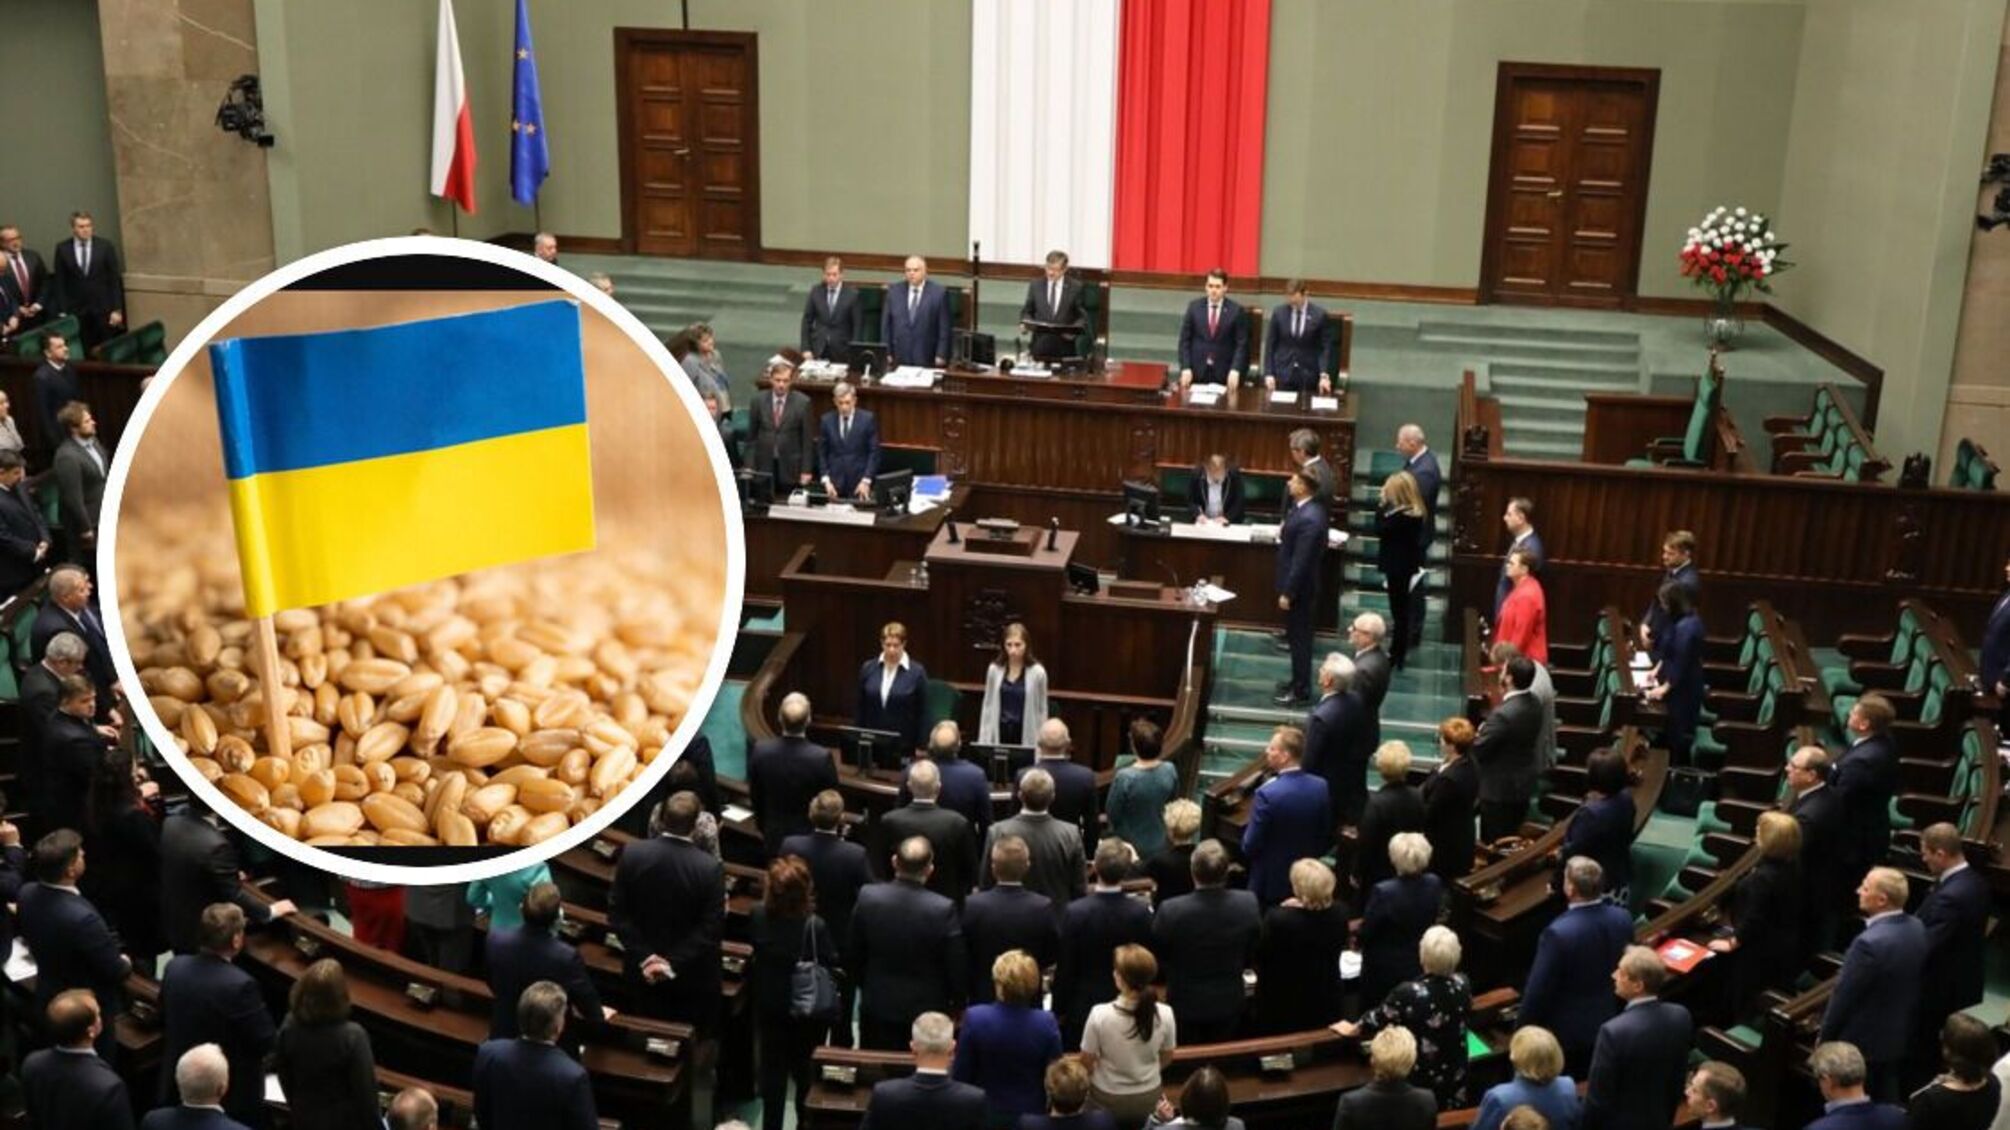 Польща заборонила імпорт зерна, м'яса, молока з України: у списку - 17 позицій - деталі